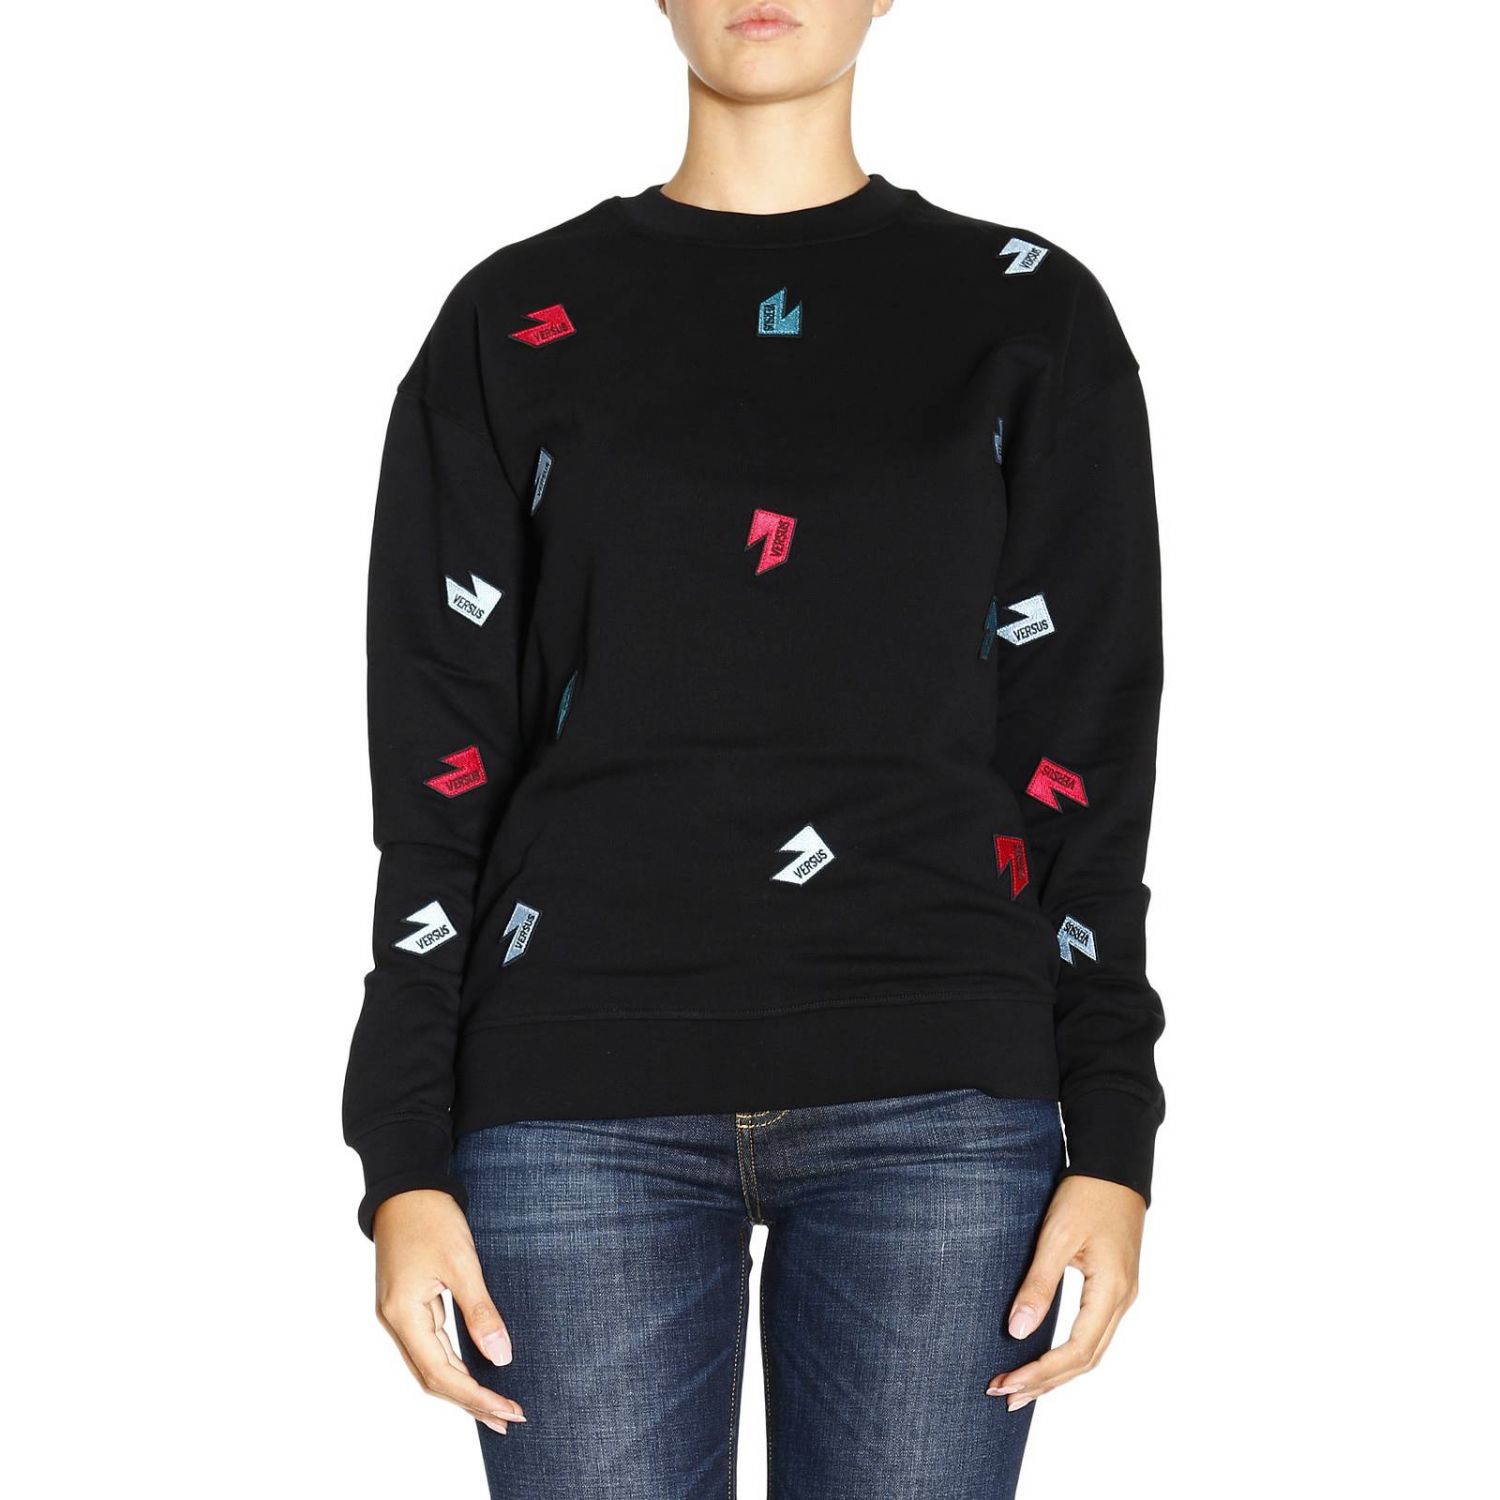 Versus Outlet: Sweater women | Sweatshirt Versus Women Black ...